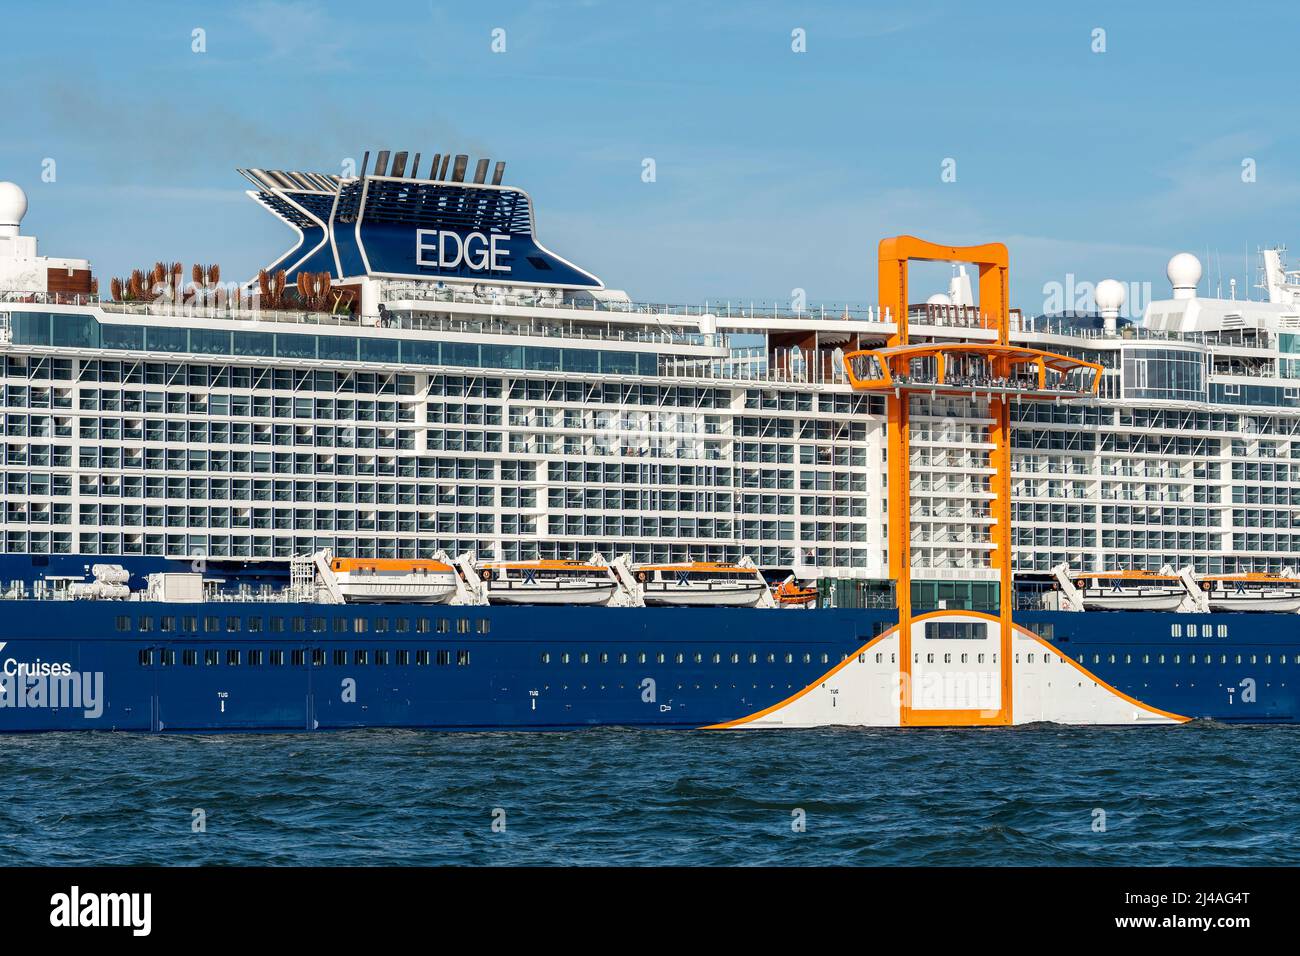 Celebrity Edge est un bateau de croisière de classe Edge exploité par Celebrity Cruises - mai 2019. Banque D'Images